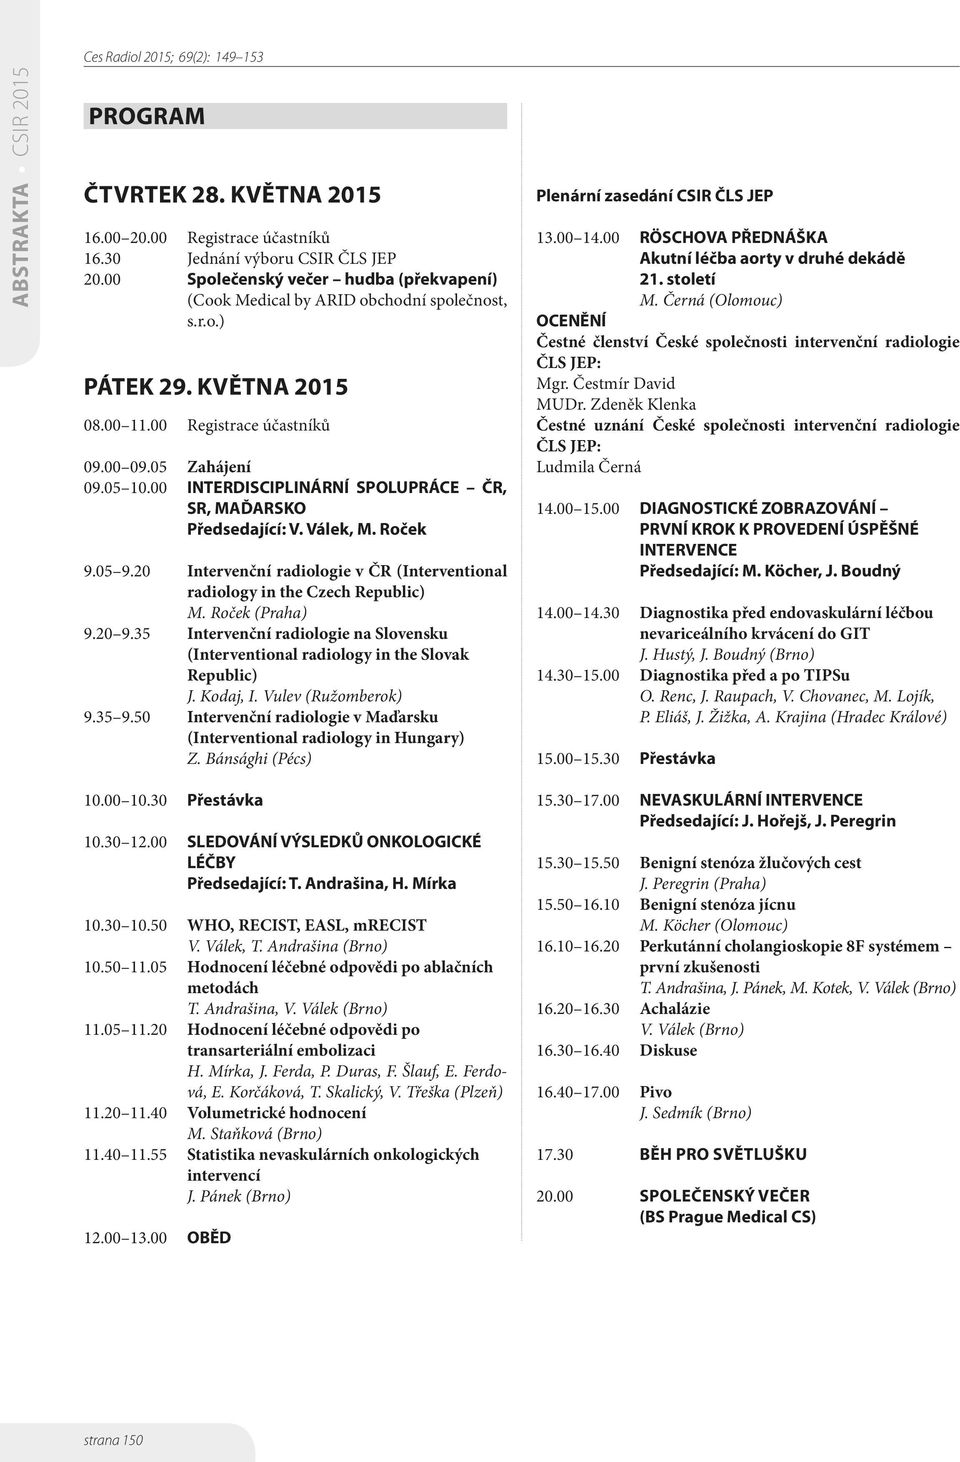 20 Intervenční radiologie v ČR (Interventional radiology in the Czech Republic) M. Roček (Praha) 9.20 9.35 Intervenční radiologie na Slovensku (Interventional radiology in the Slovak Republic) J.